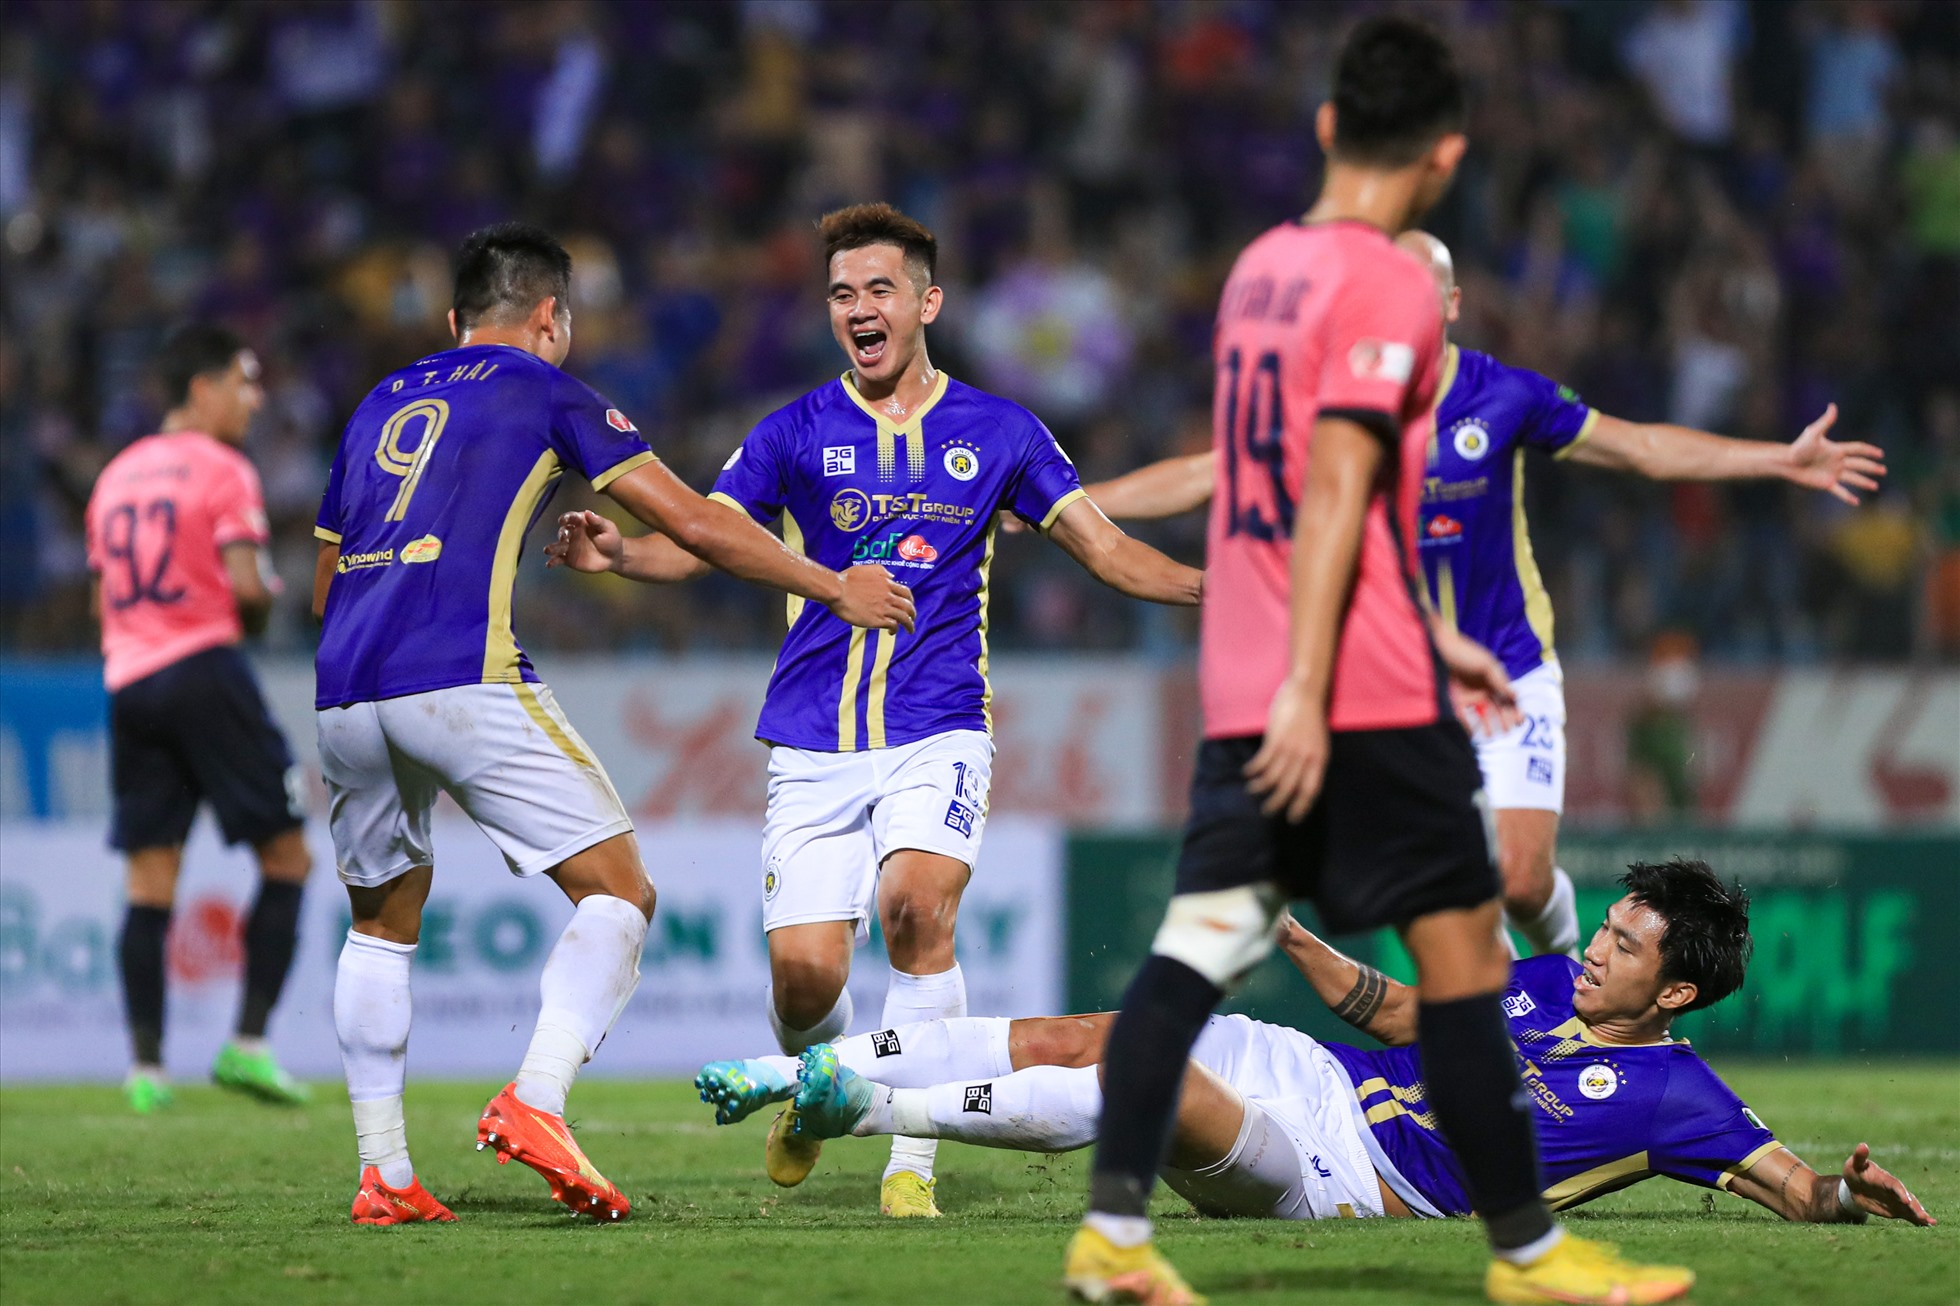 Chiến thắng 2-0 trước Hồng Lĩnh Hà Tĩnh tại vòng 25 Night Wolf V.League 2022 giúp câu lạc bộ Hà Nội vô địch giải đấu sớm 1 vòng.